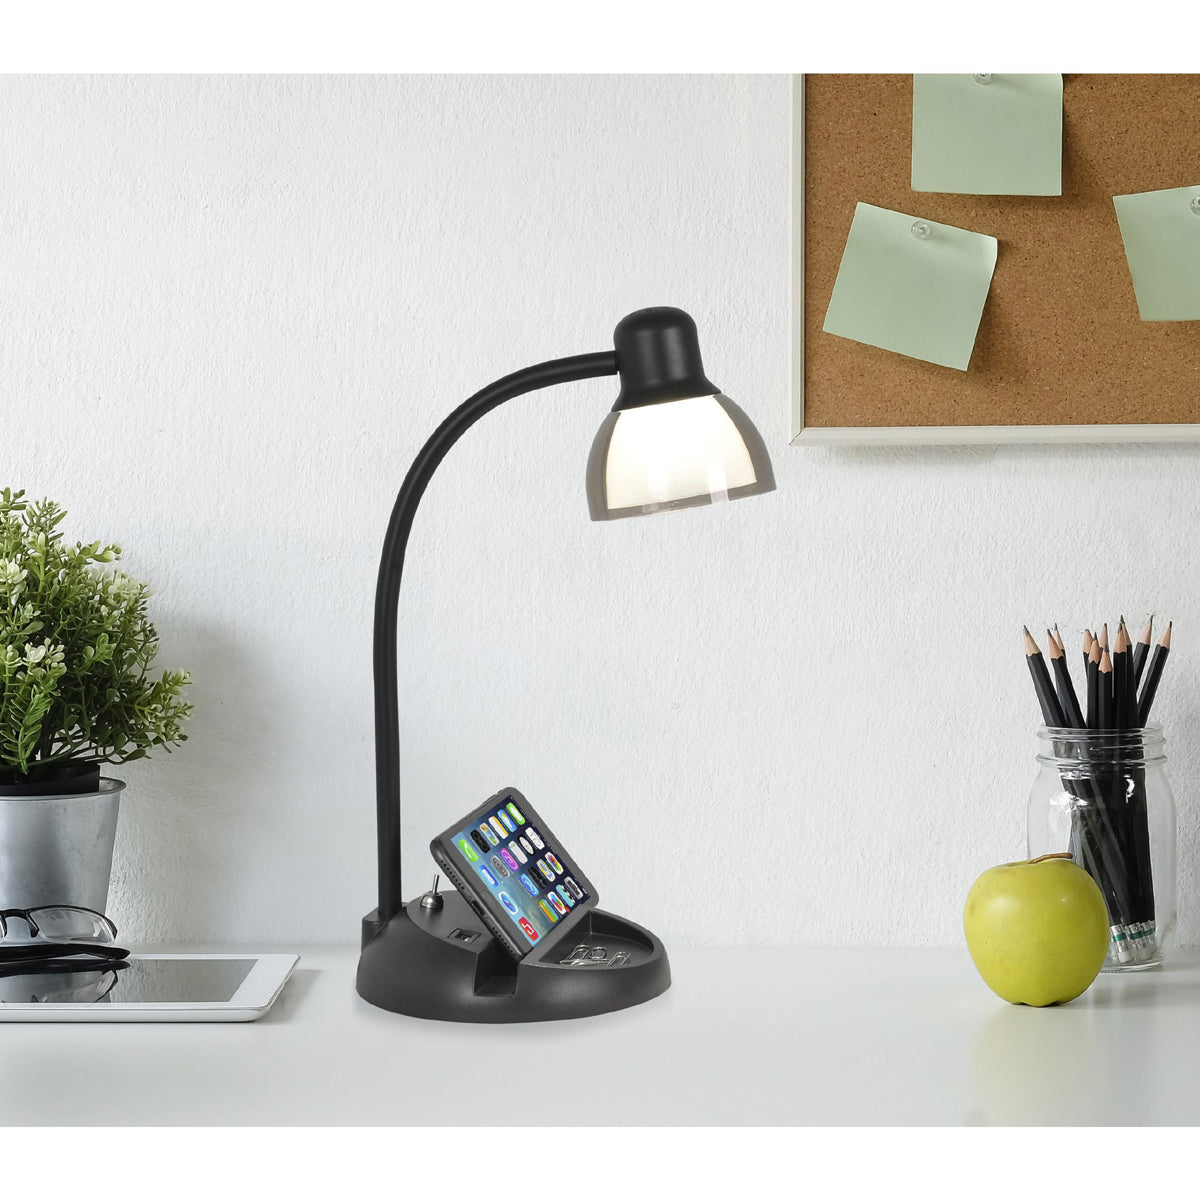 Charging Station LED Desk Lamp